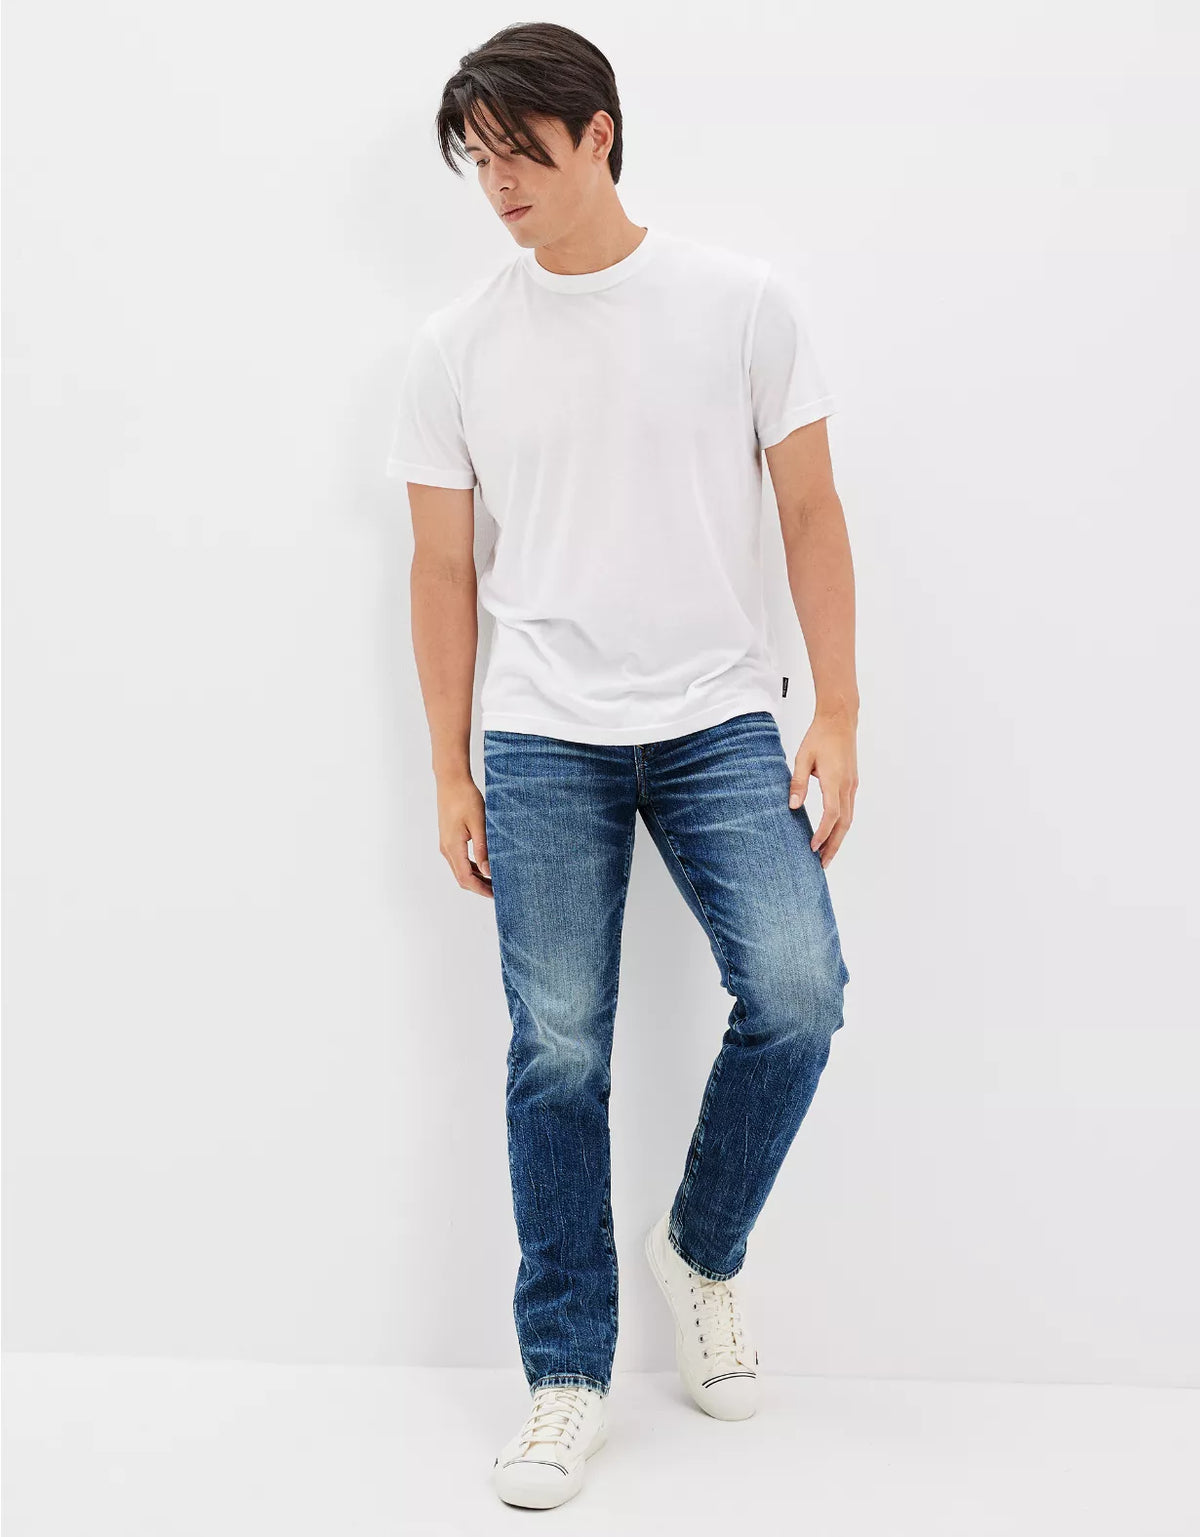 Versatile Flex Denim - Stylish Athletic Jeans for Men